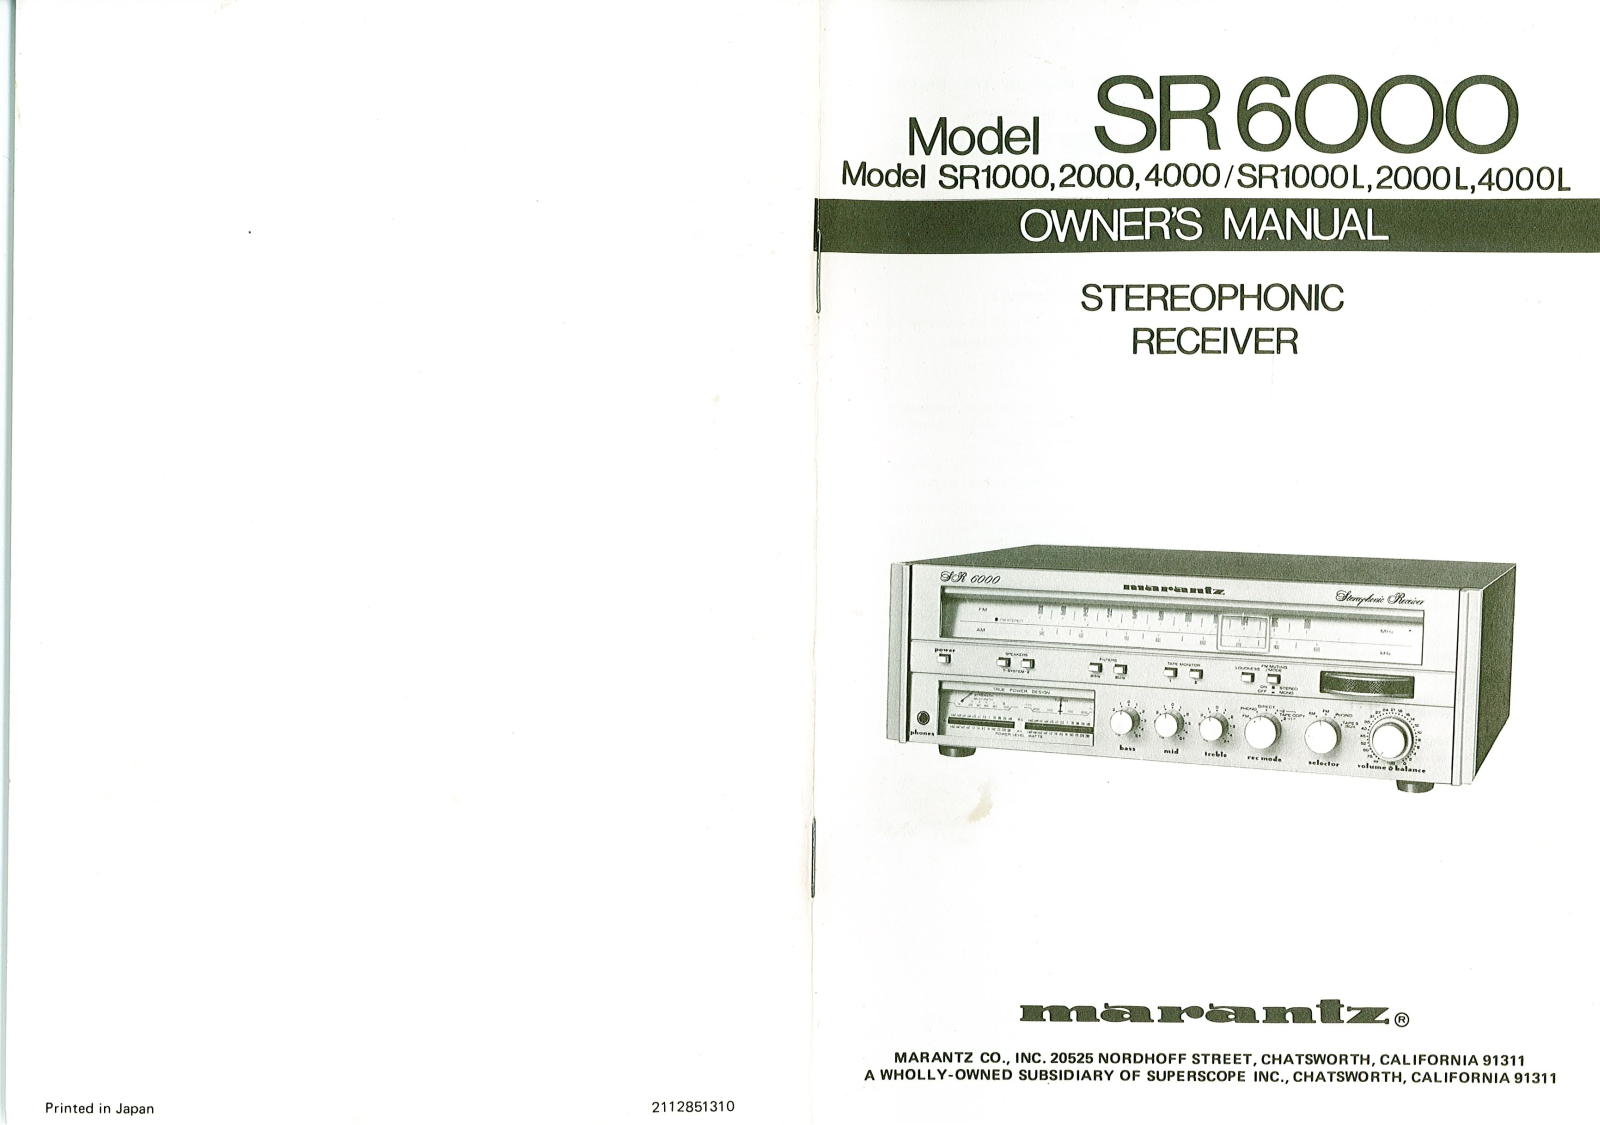 Marantz SR-6000, SR-4000, SR-2000, SR-1000-L, SR-1000 Owners Manual